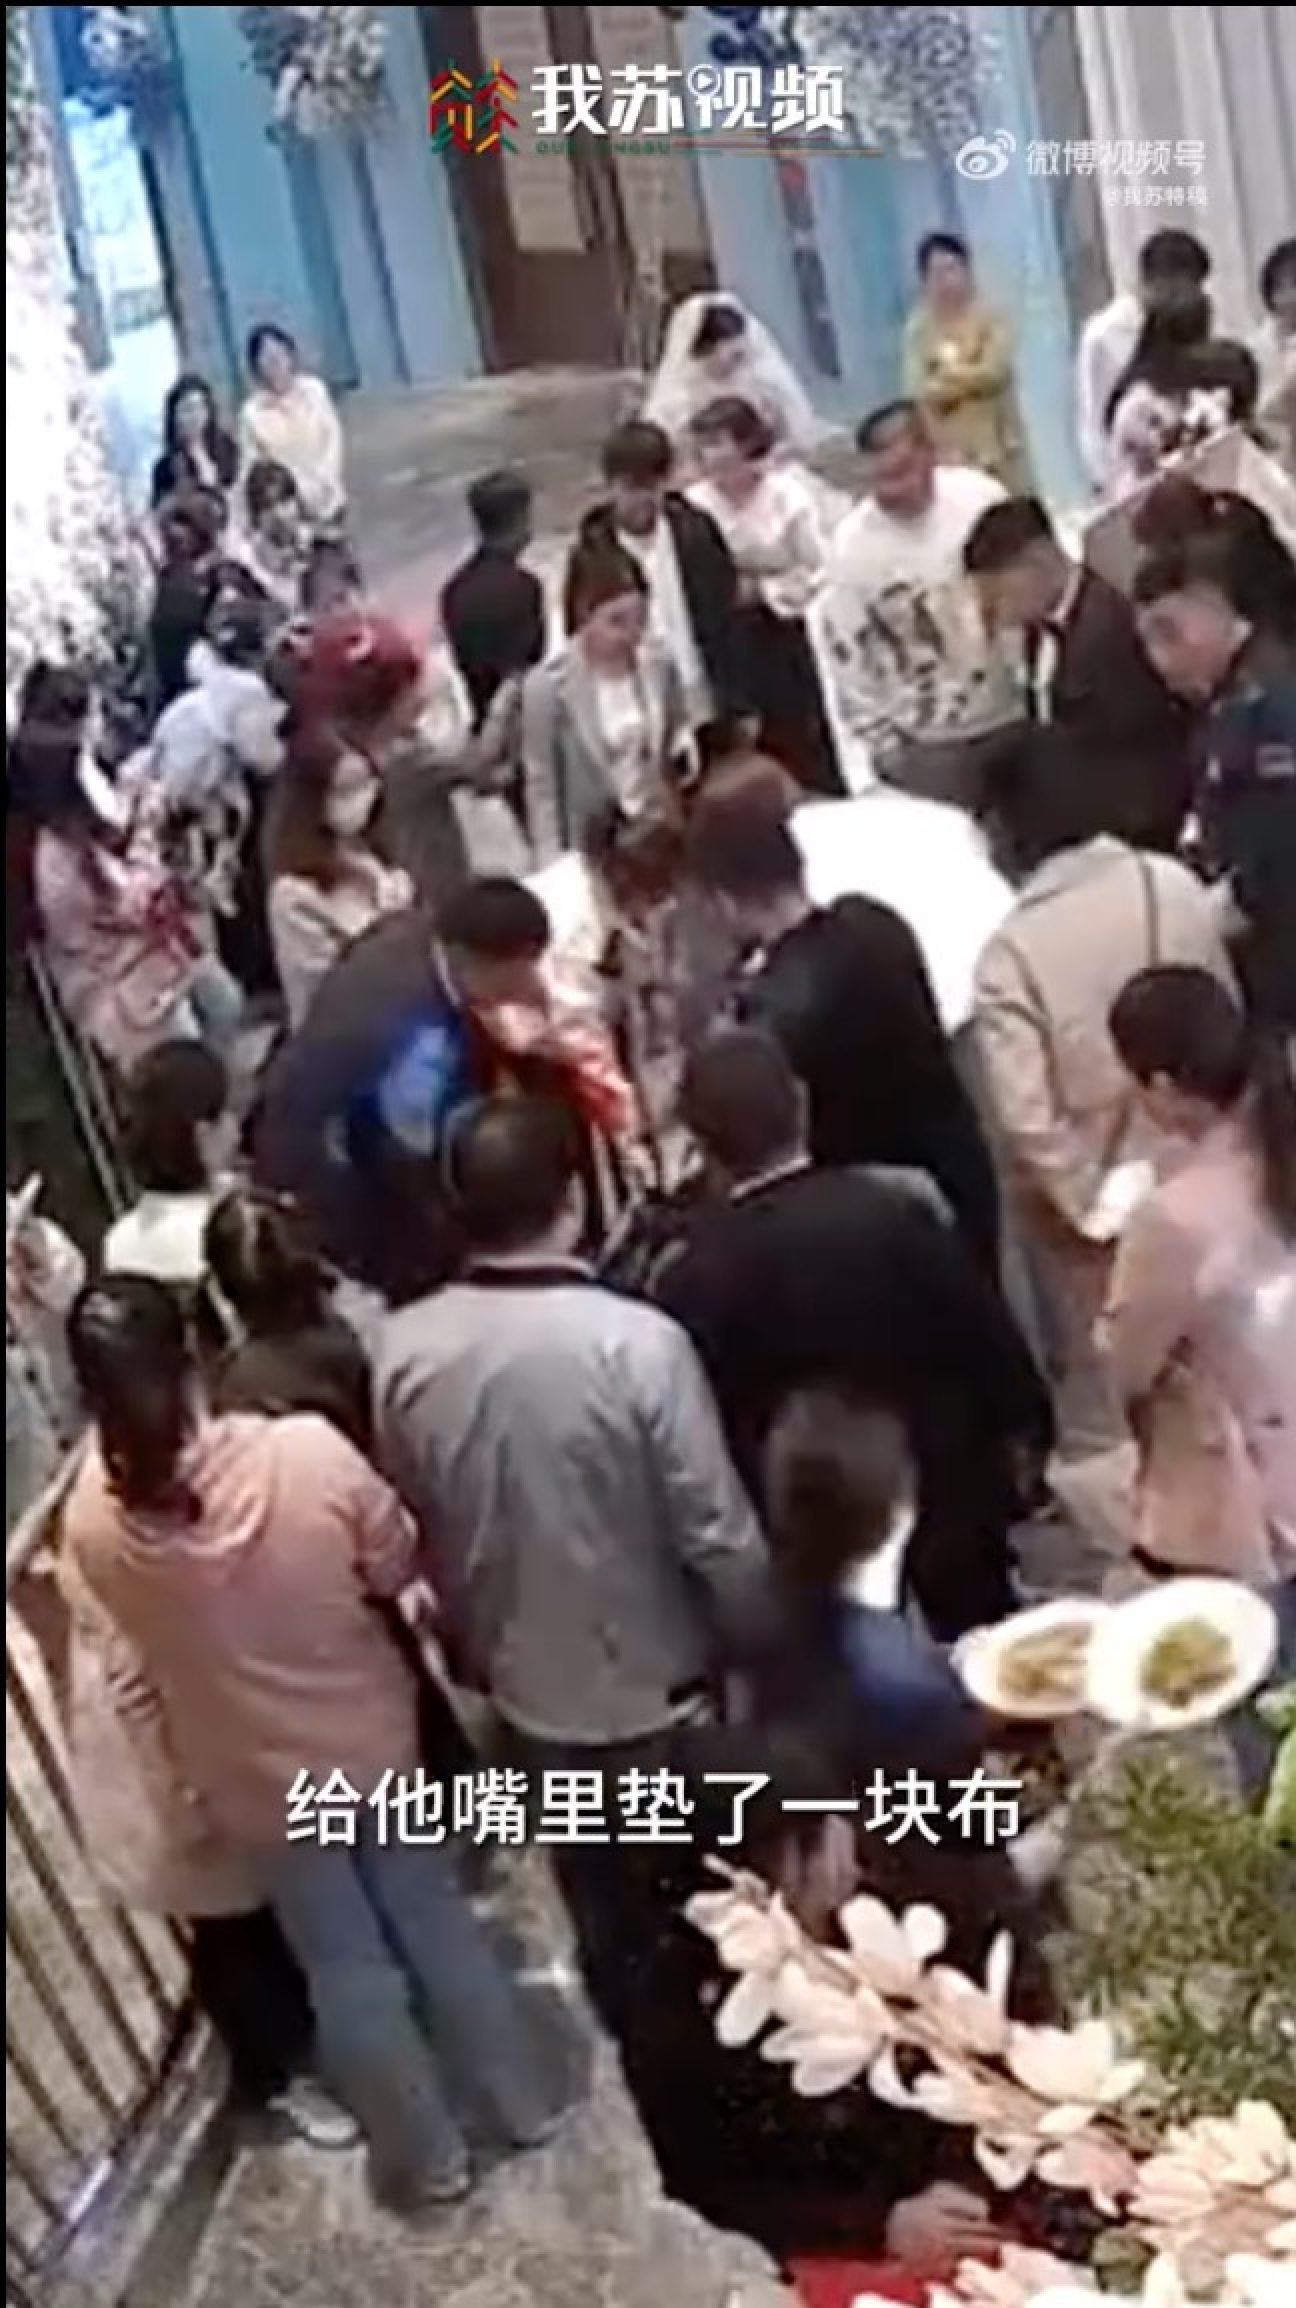 Trung Quốc: Chú rể cứu mạng người ngay tại lễ cưới - Ảnh 3.